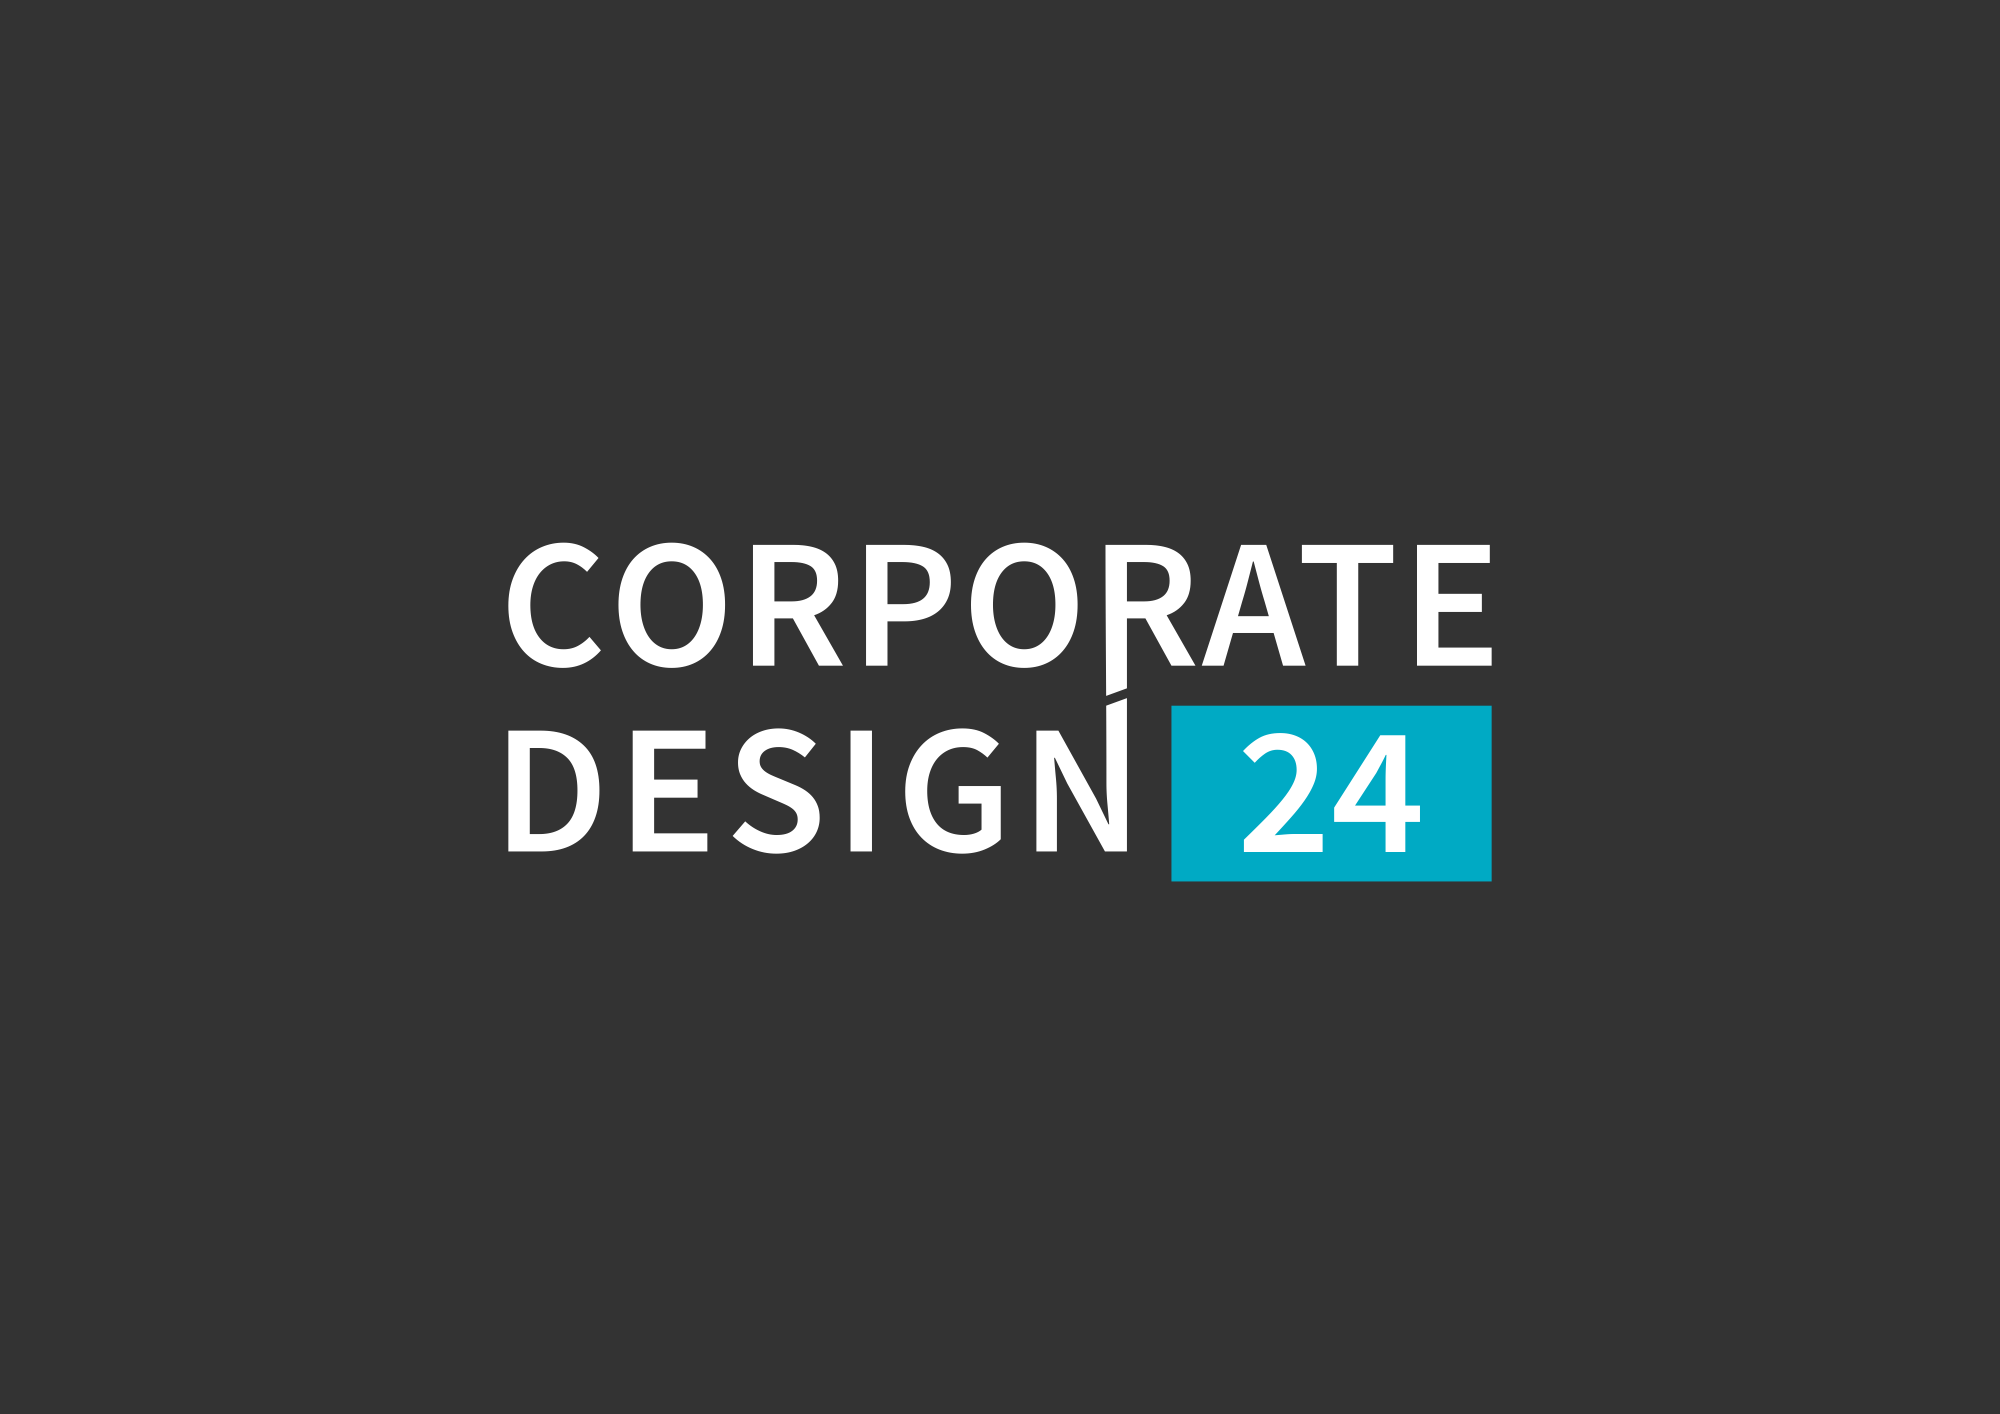 CorporateDesign24 - Logo auf dunklem Hintergrund.